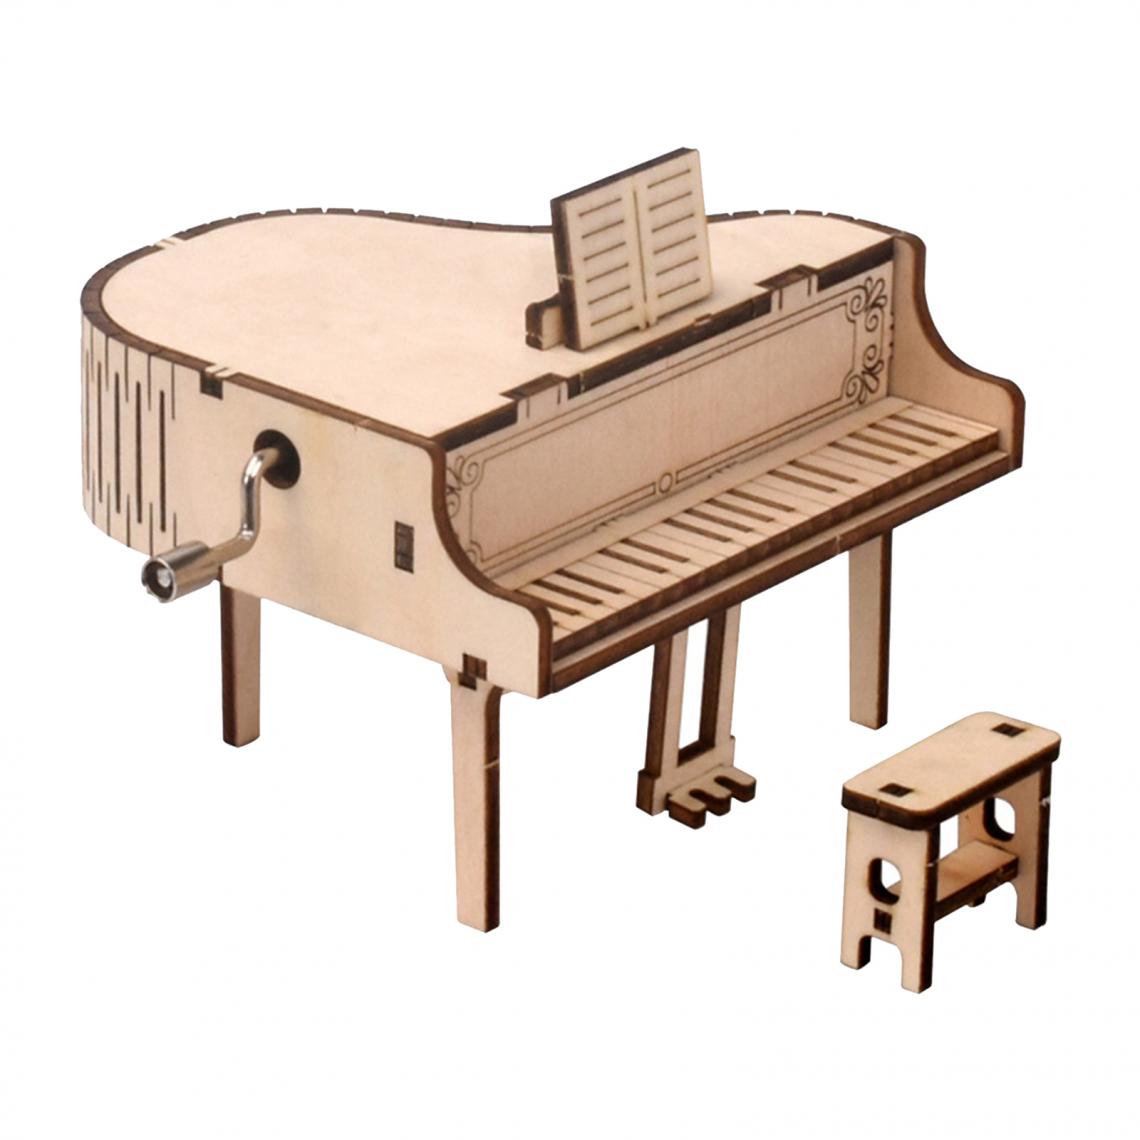 marque generique - 3D Puzzle En Bois D'artisanat Assemblage Modèle de Piano Boîte à Musique Construction Kit pour Les Adolescents et Les Adultes - Accessoires et pièces